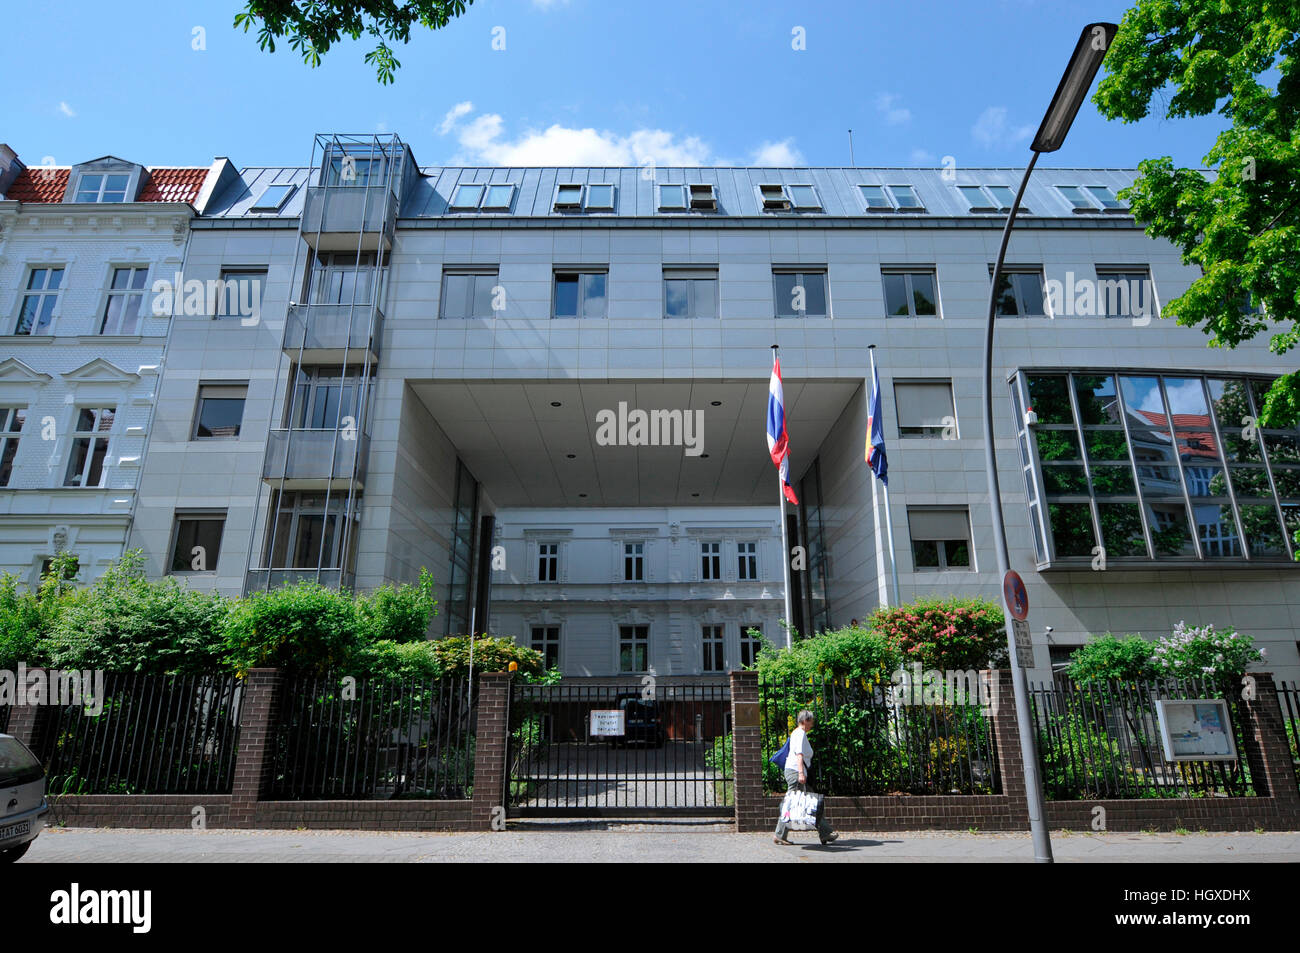 Botschaft Thaïlande, Lepsiusstrasse, Steglitz, Berlin, Deutschland Banque D'Images